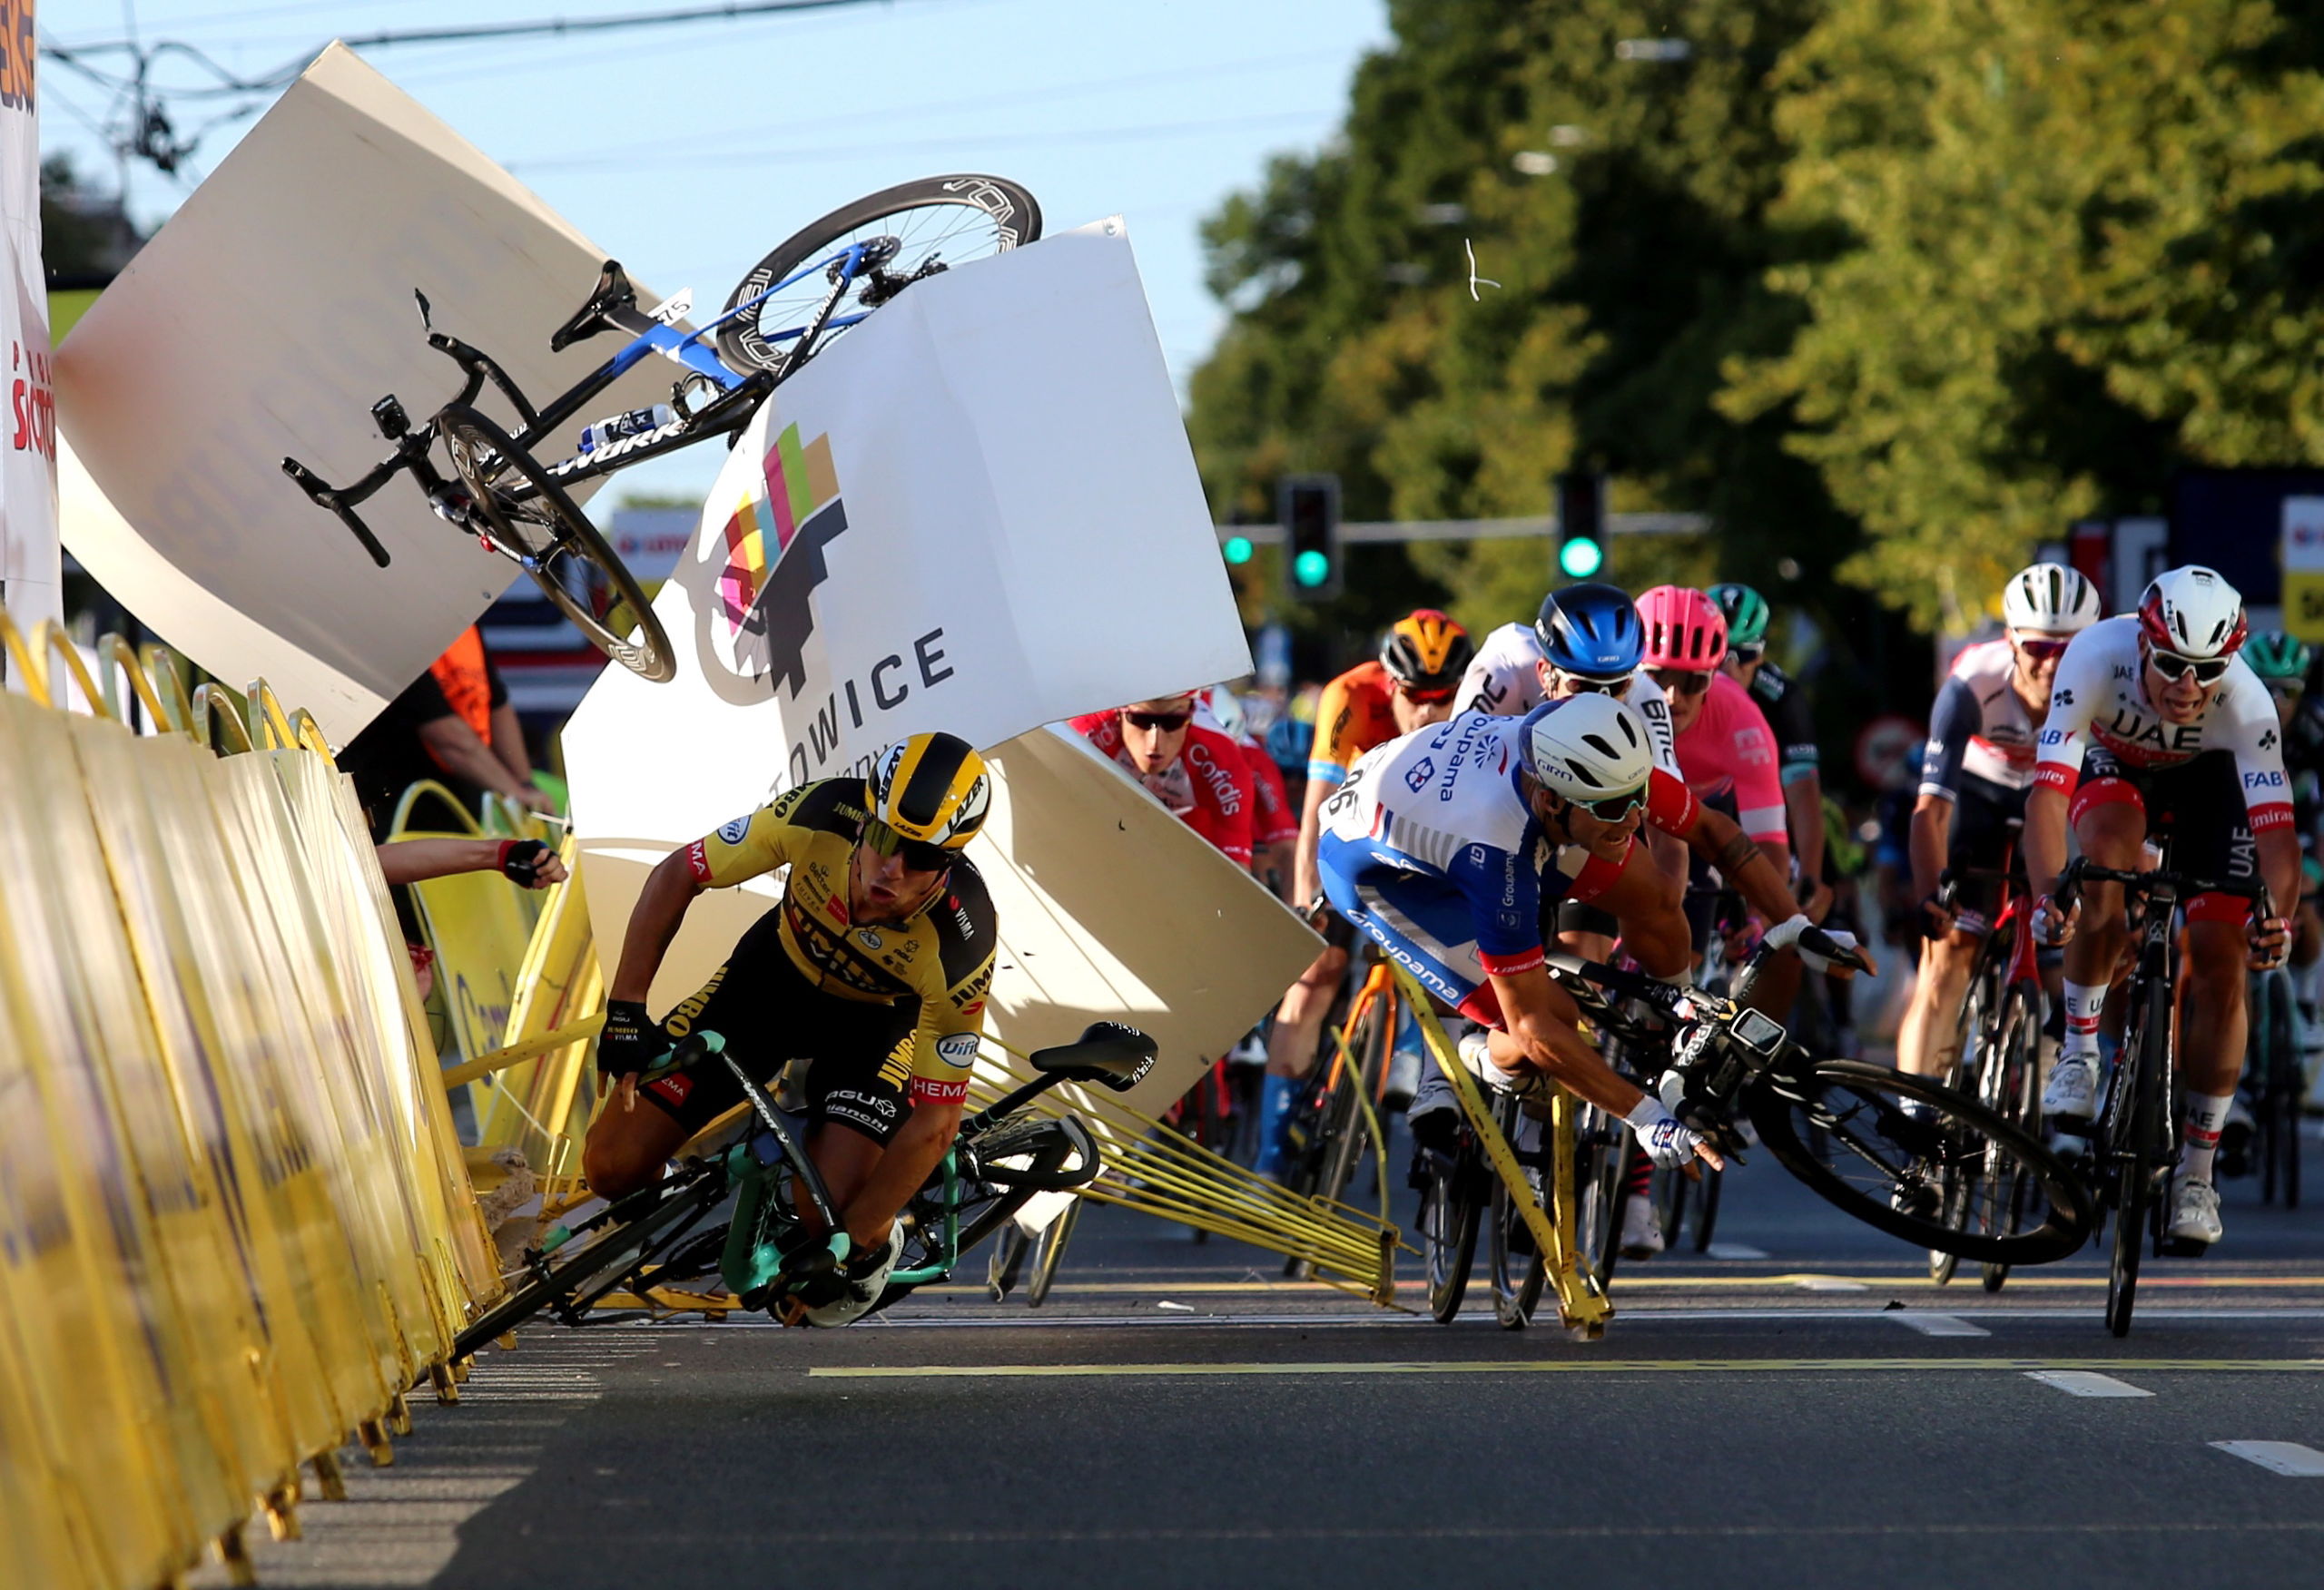 Dylan Groenewegen (Gele trui) van Jumbo-Visma valt vlak voor de finish, na een botsing met Fabio Jakobsen van Deceuninck-Quick-Step. De fiets van Jakobsen (linksboven in beeld) is nog te zien.